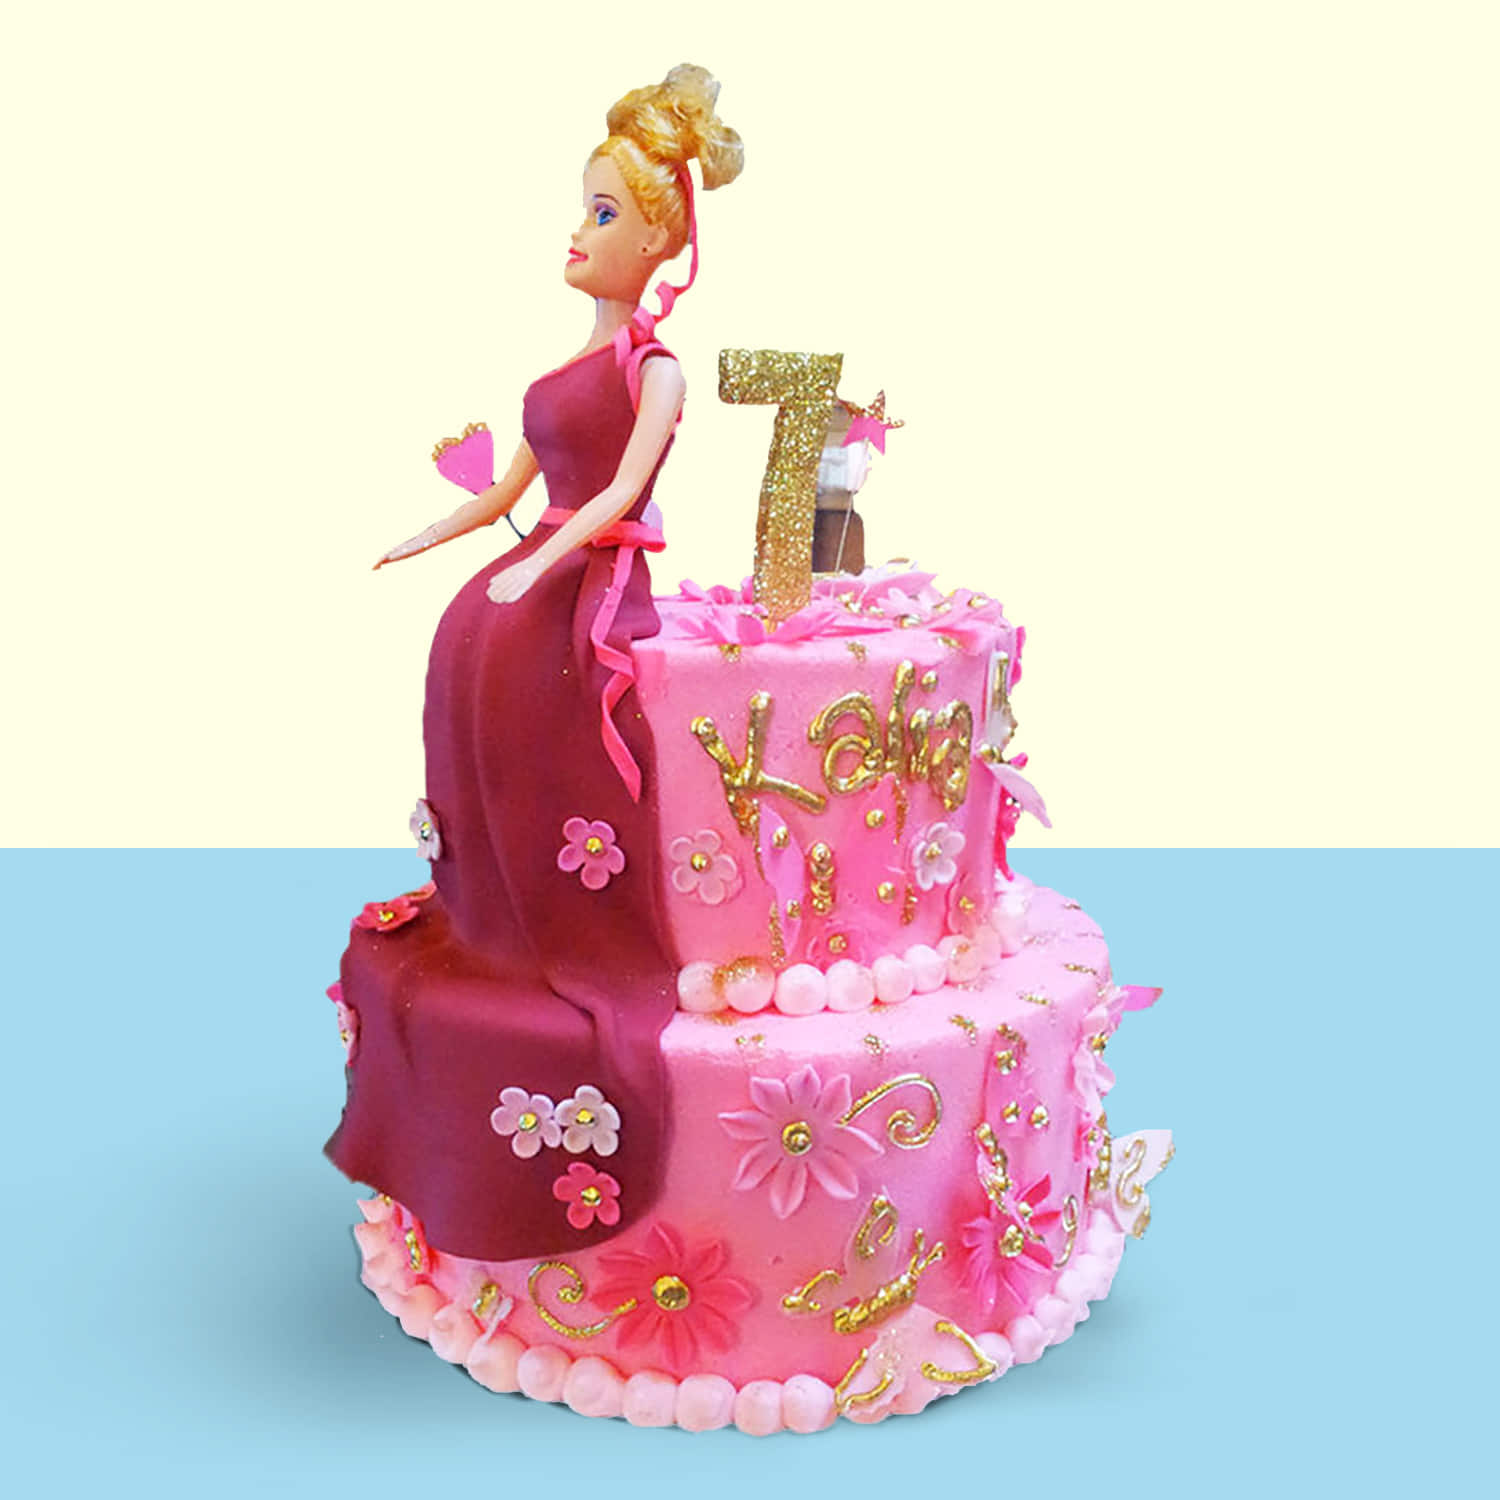 Barbie square cake｜TikTok Search